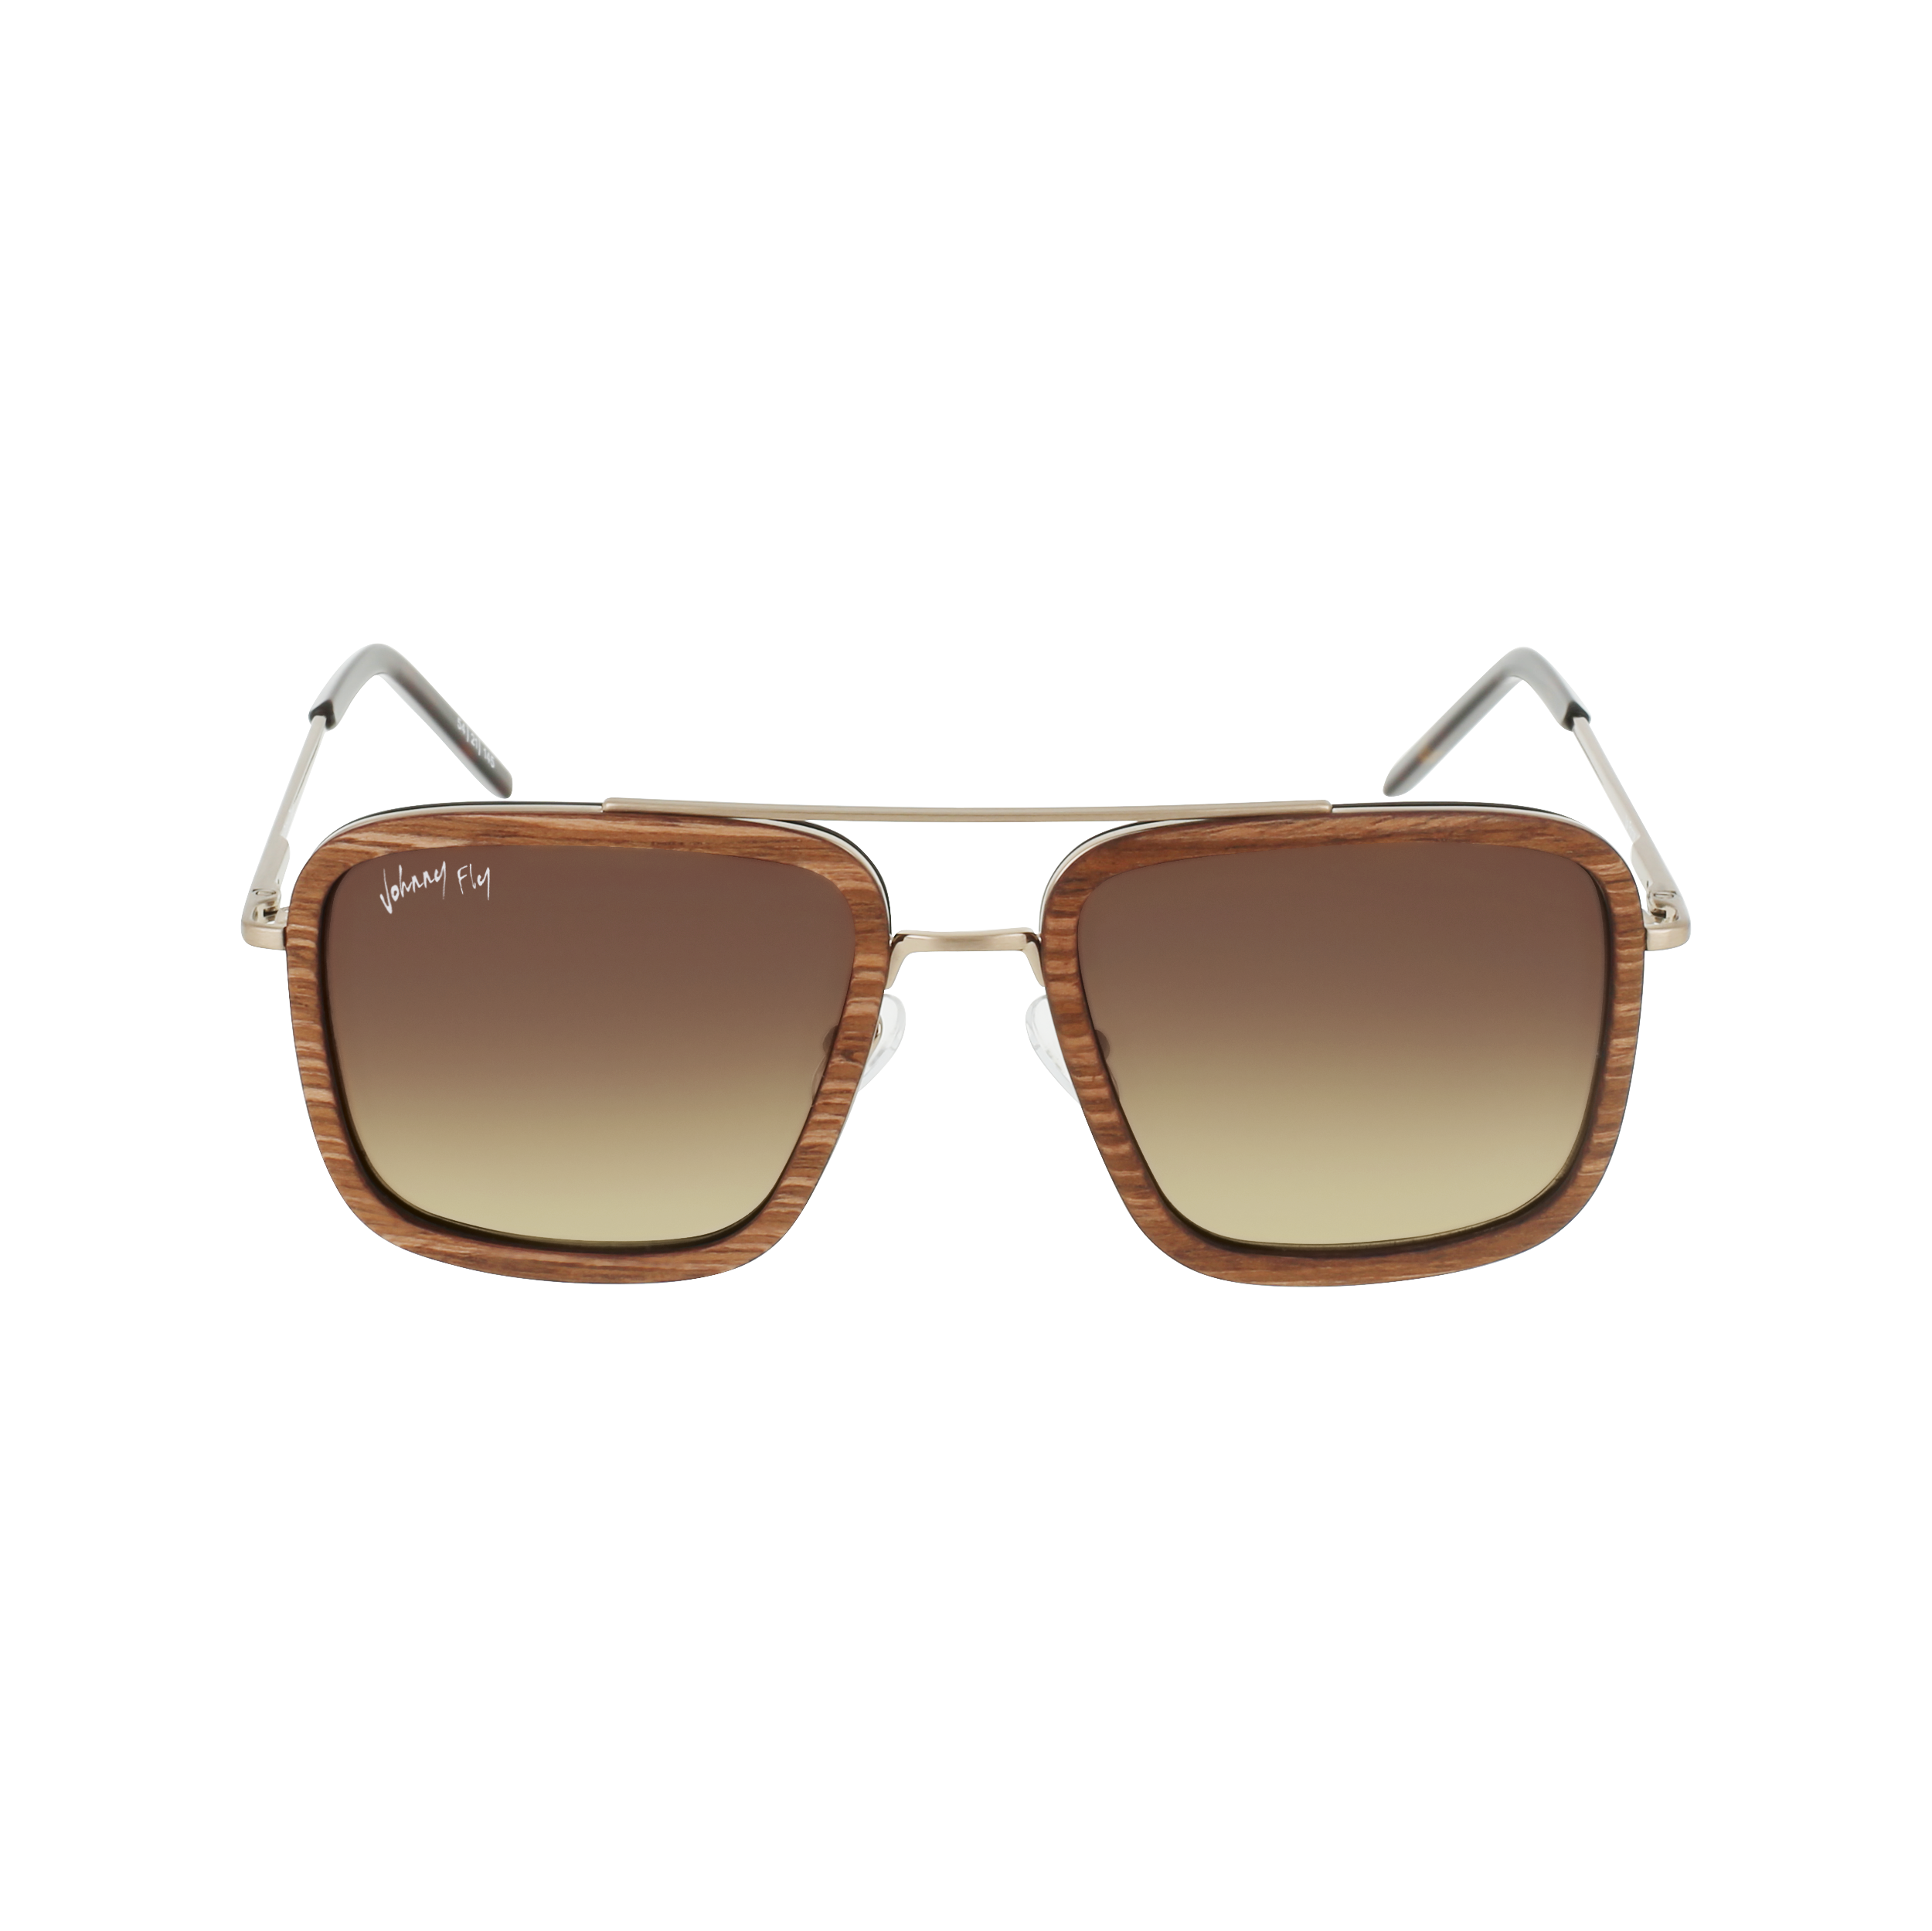 LAFORGE - Brushed Gold - Sunglasses - Johnny Fly Eyewear | 